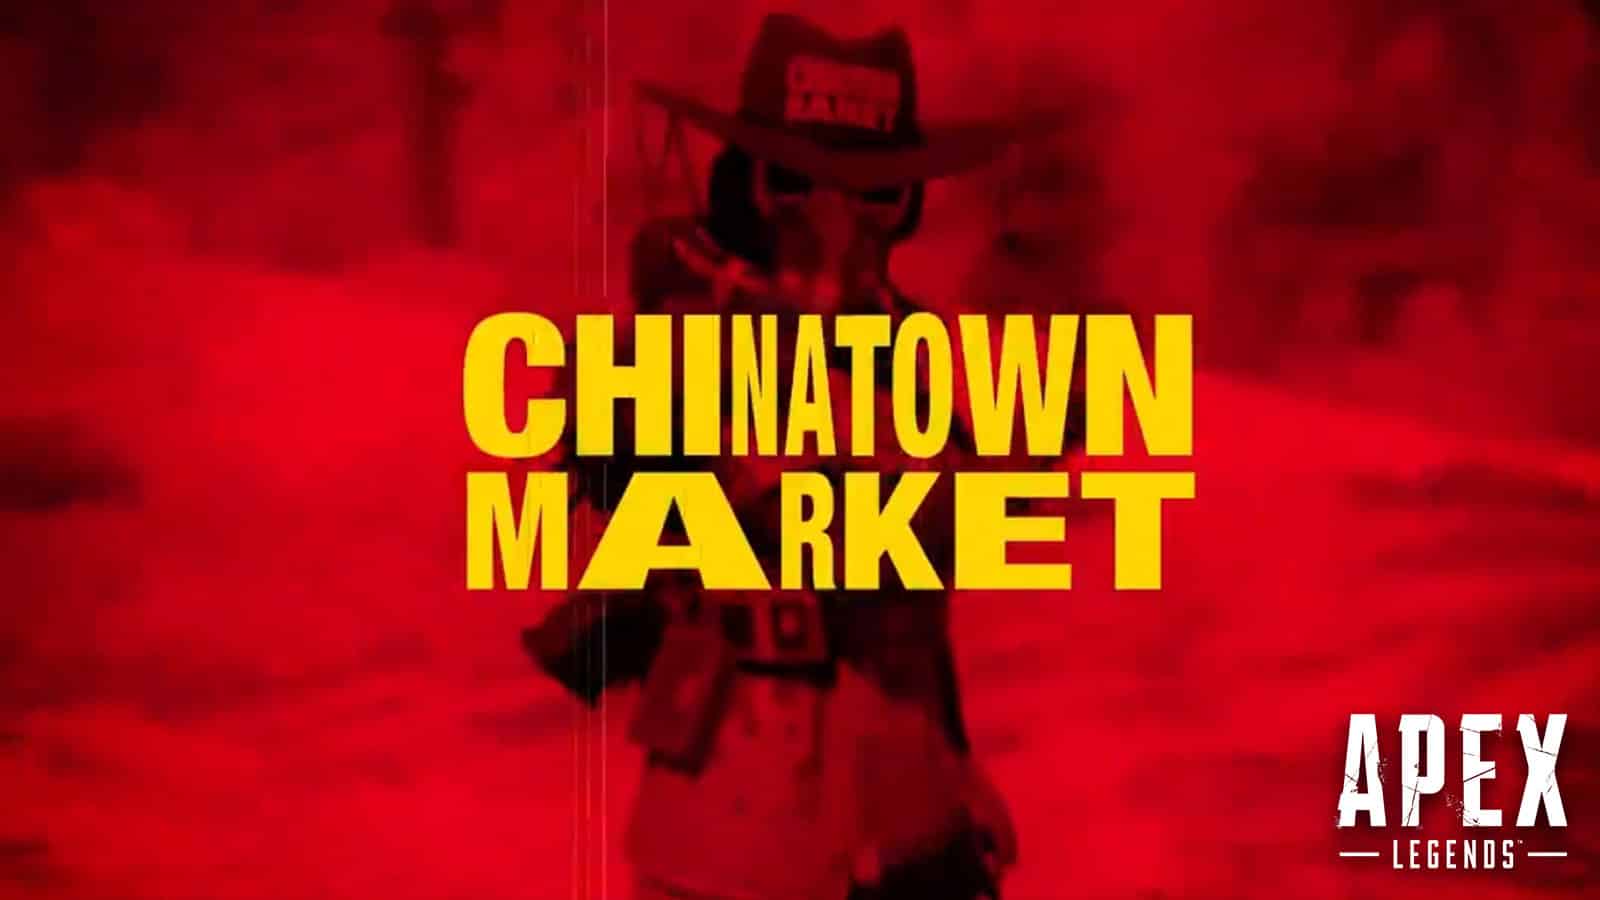 Quand est prévu l'Apex Legends Chinatown Market ? Date de sortie, skins, plus